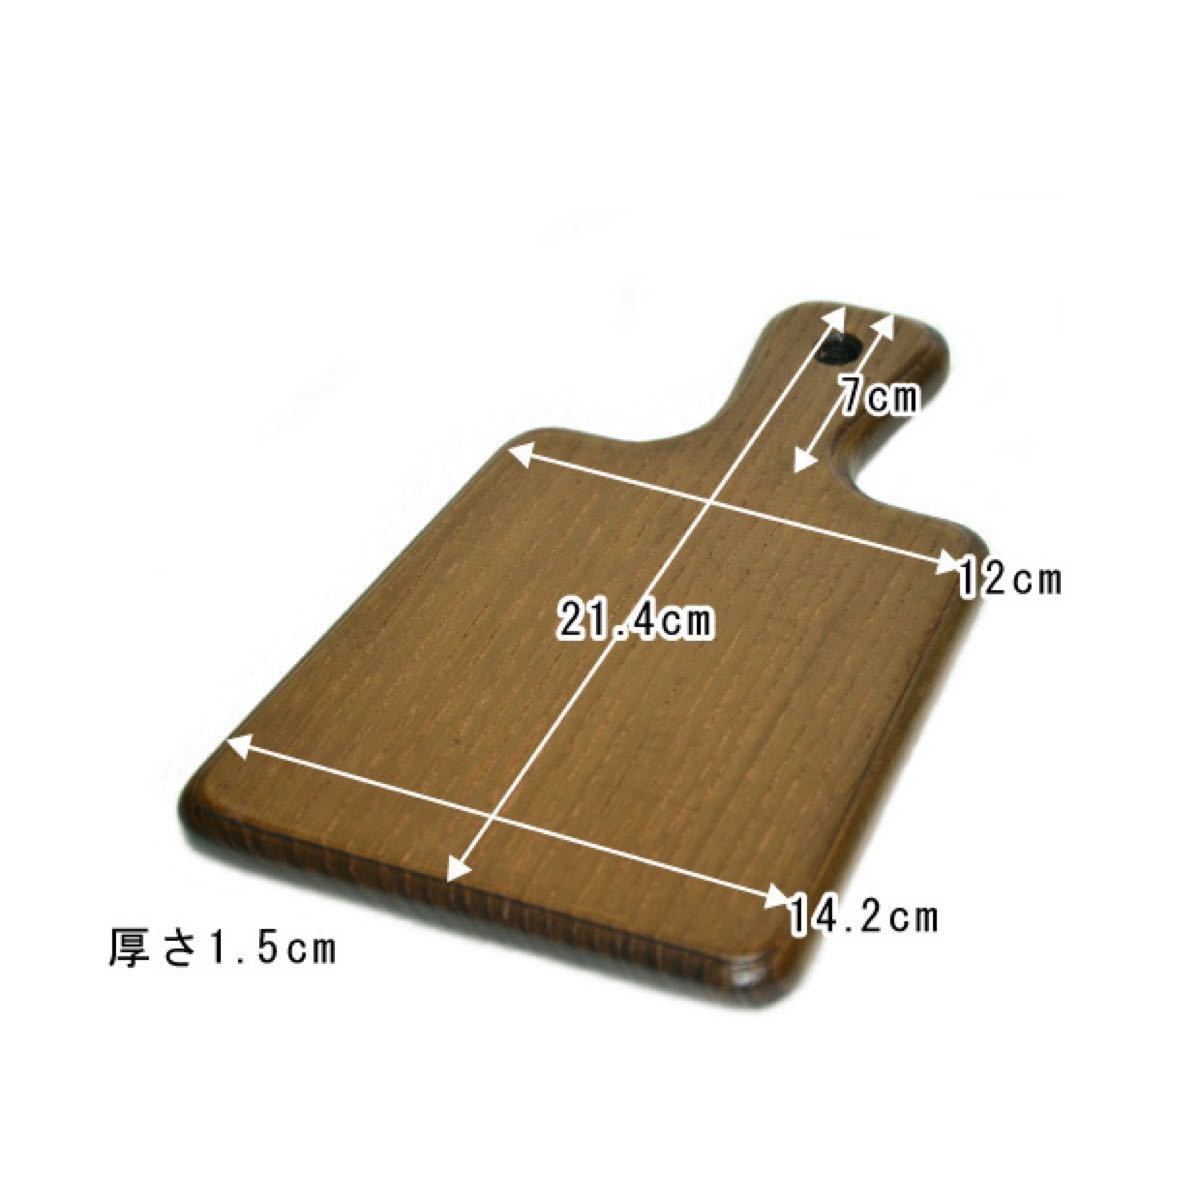 【No.13】けやき カッティングボード まな板 カッティング ボード 木製 ハンドメイド 欅 ケヤキ